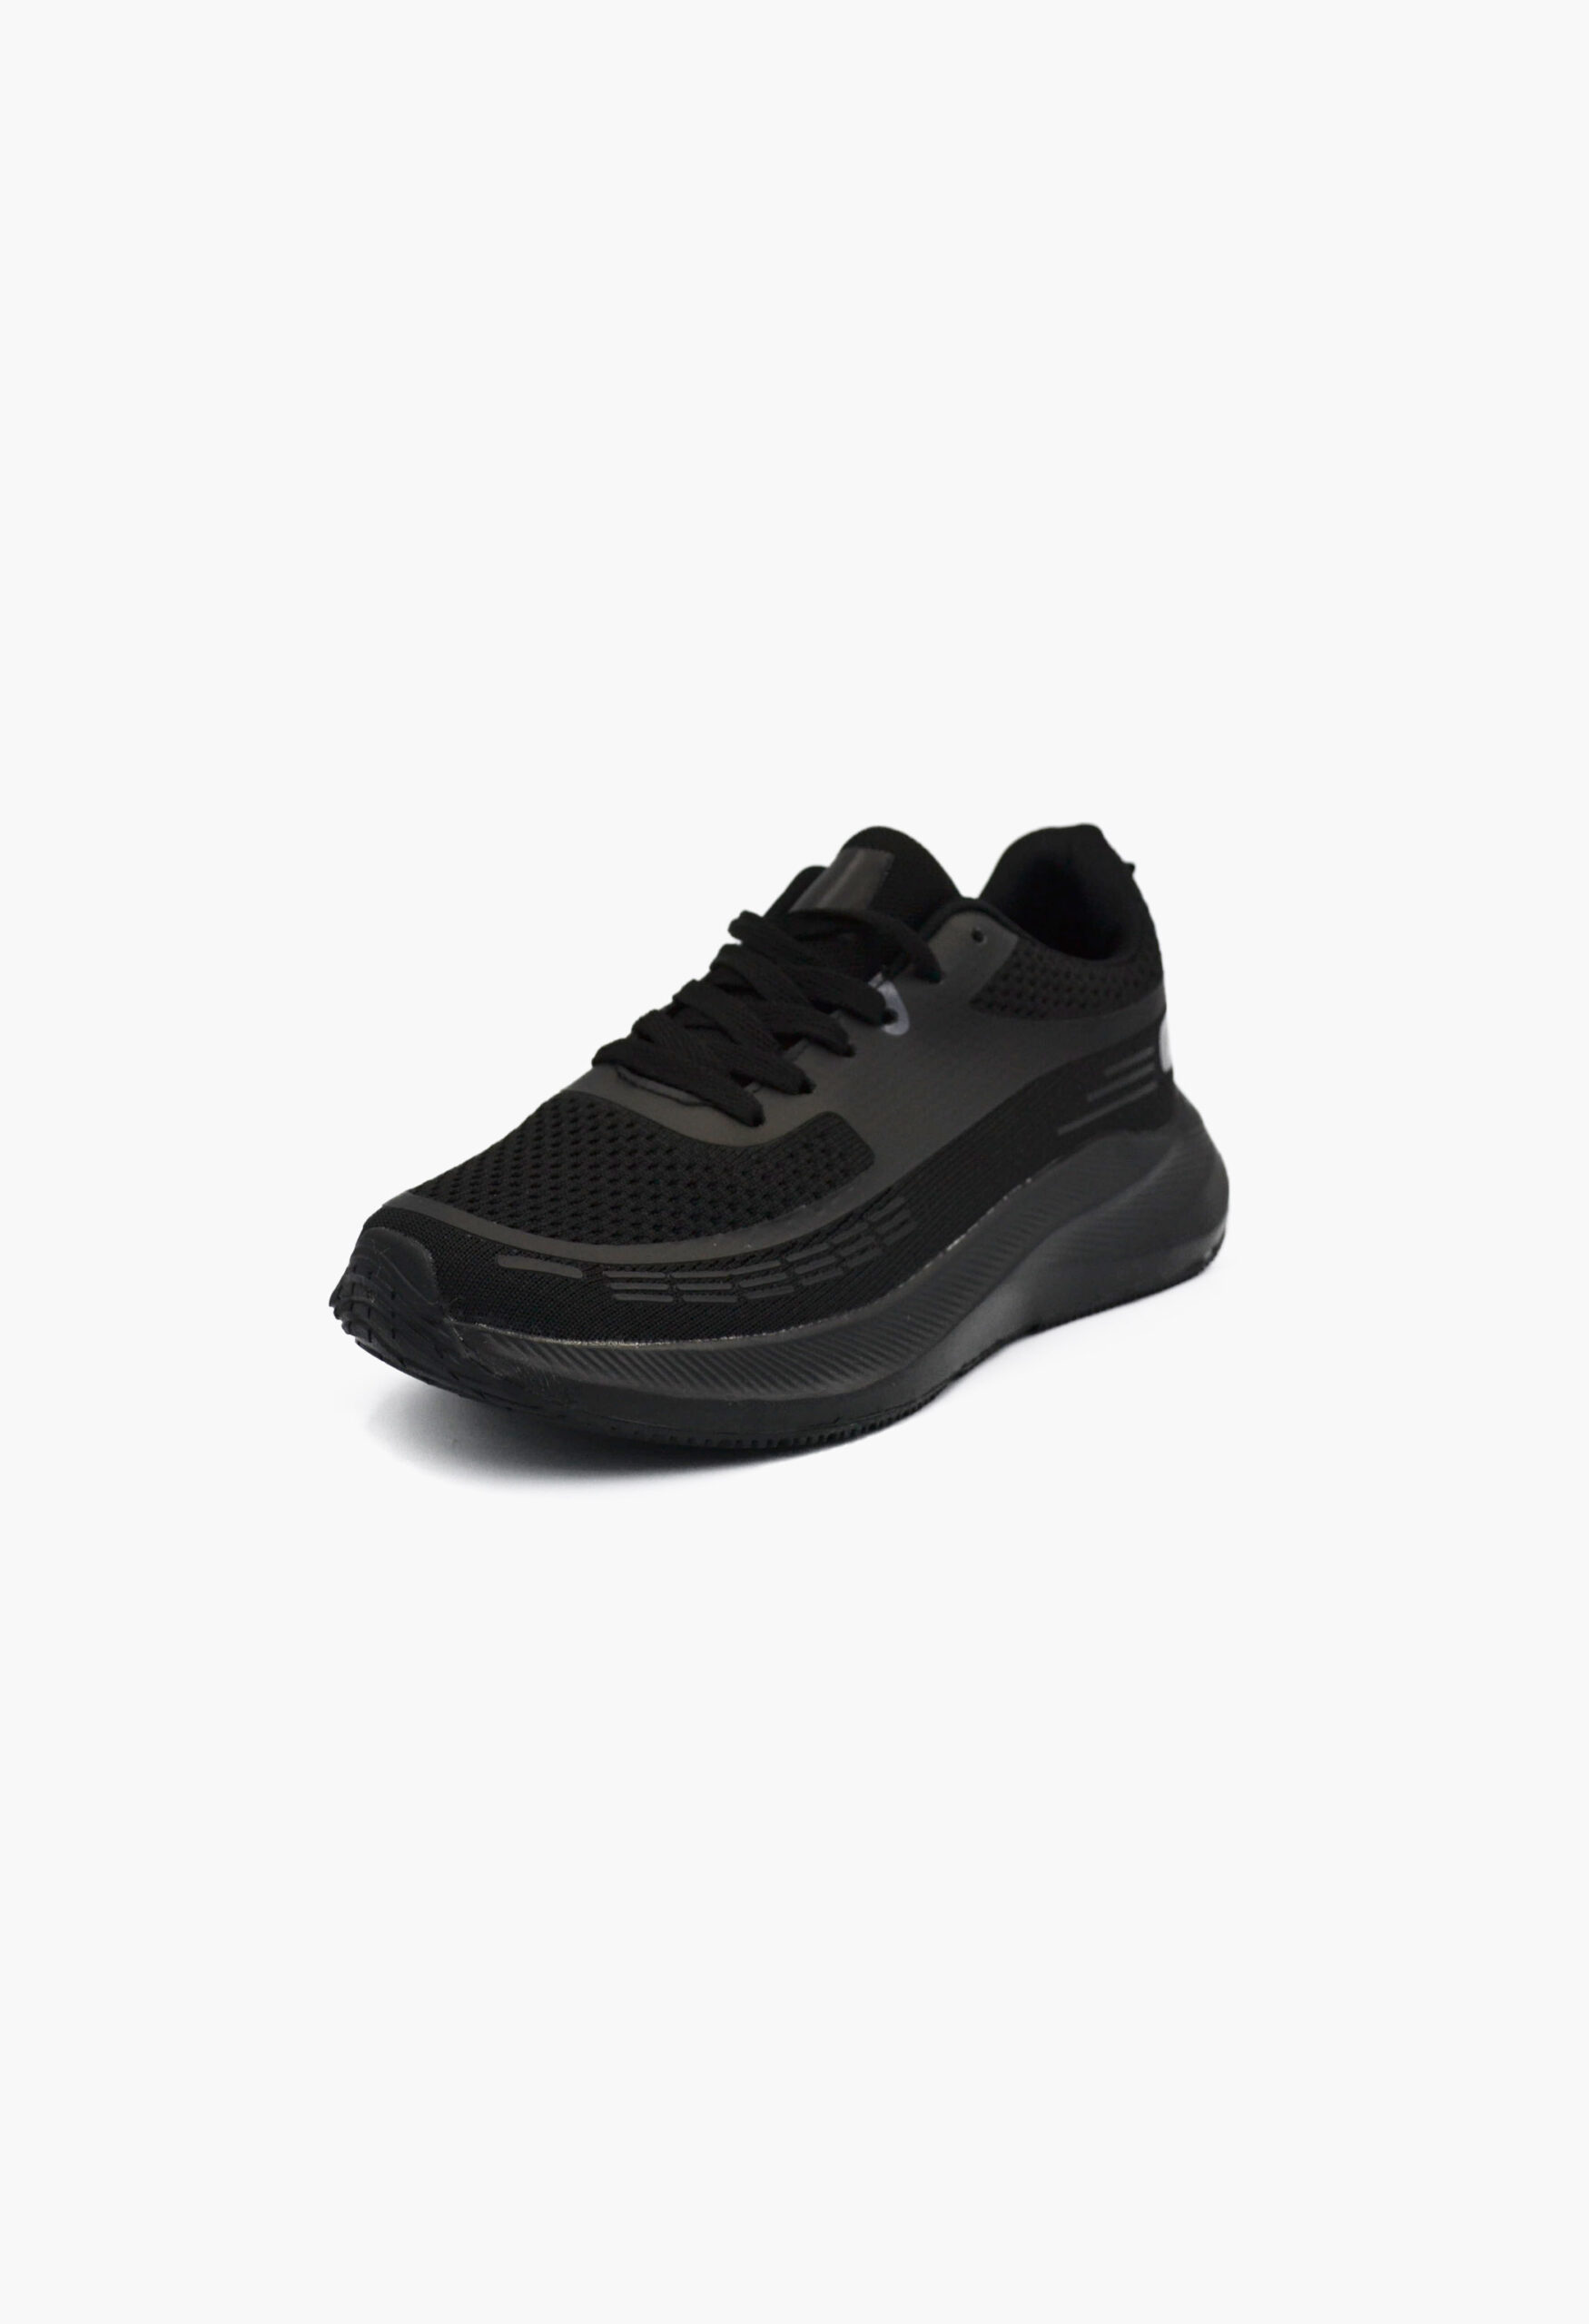 Αθλητικά Παπούτσια για Τρέξιμο Μαύρο / B-50-2-black/grey Γυναικεία Αθλητικά και Sneakers joya.gr